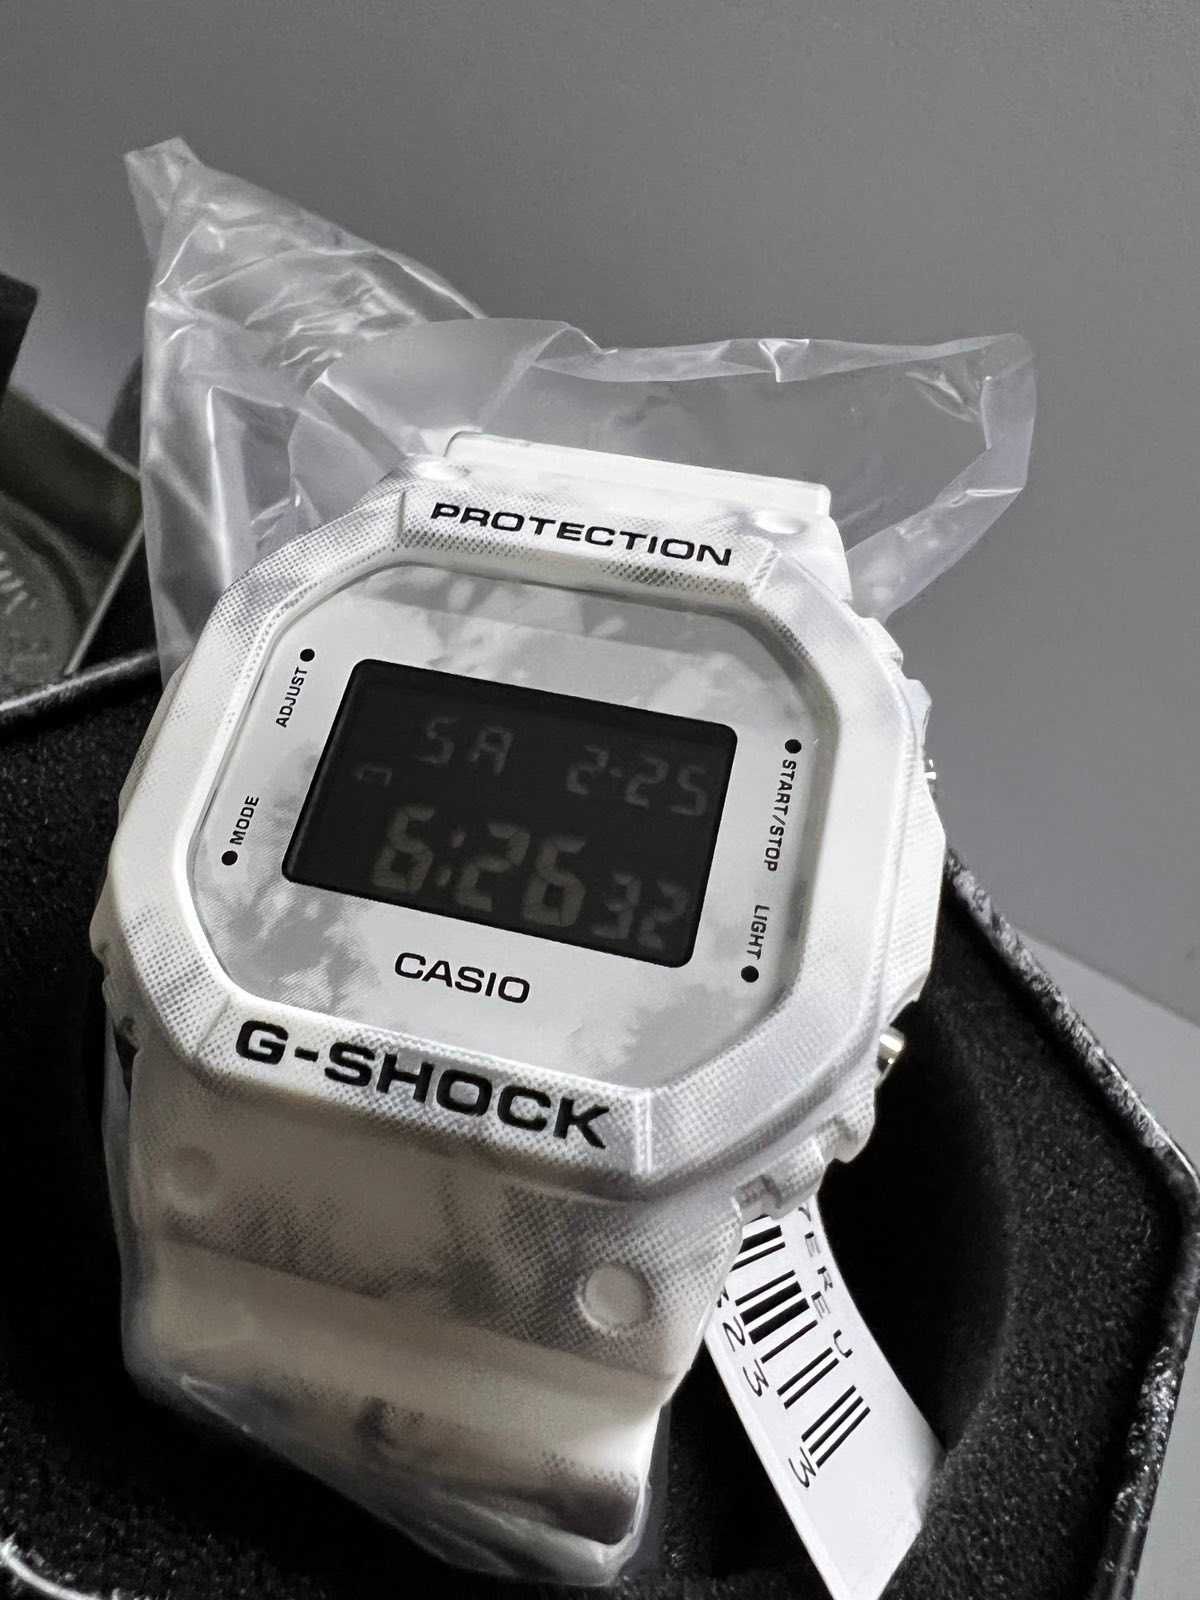 Часы Casio G-SHOCK DW-5600GC-7ER НОВЫЕ!